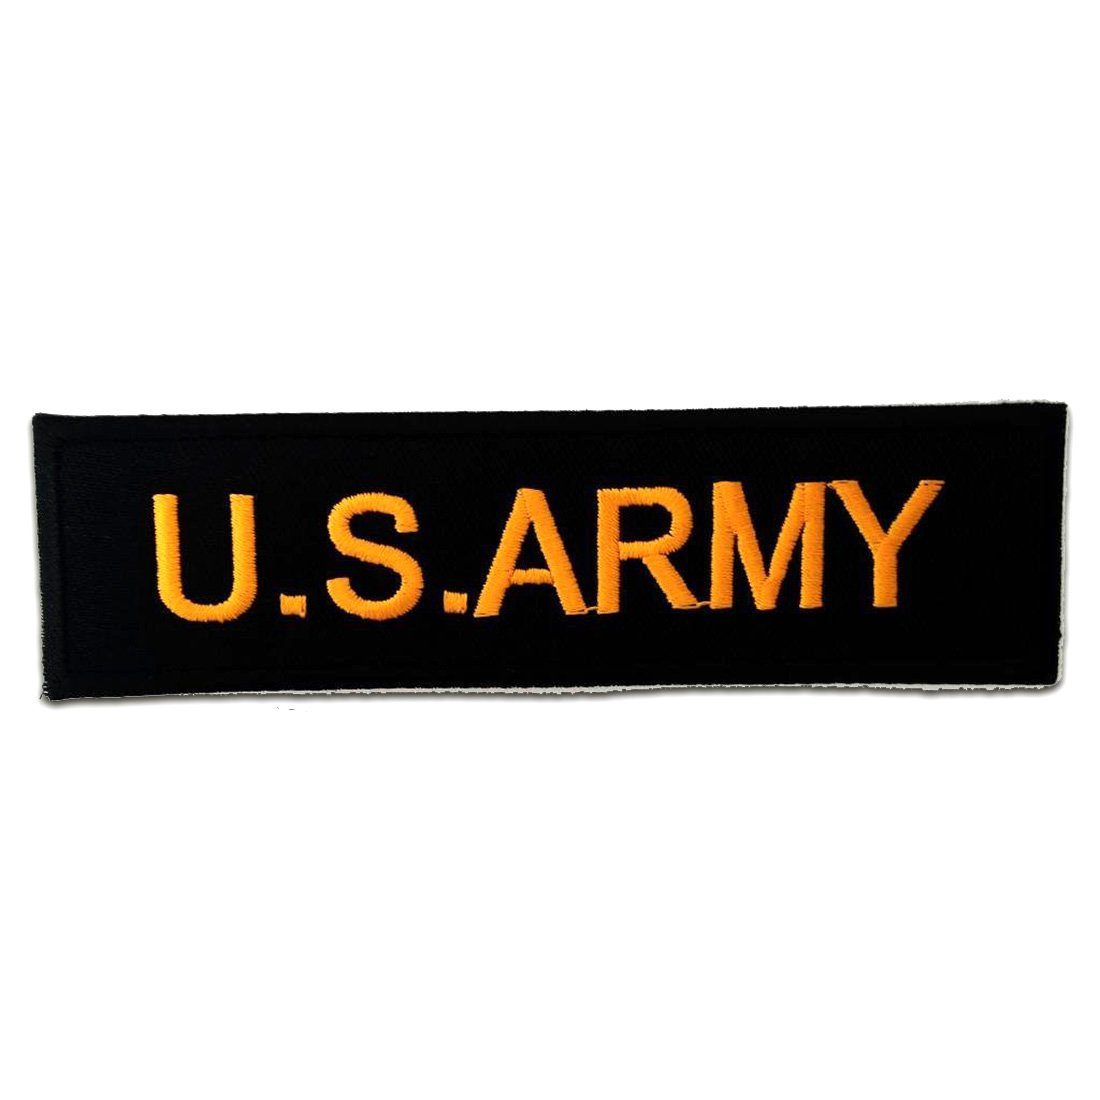 Aufnäher / Bügelbild schwarz U.S Army Patches Aufbügeln 12,4 x 3,5 cm 